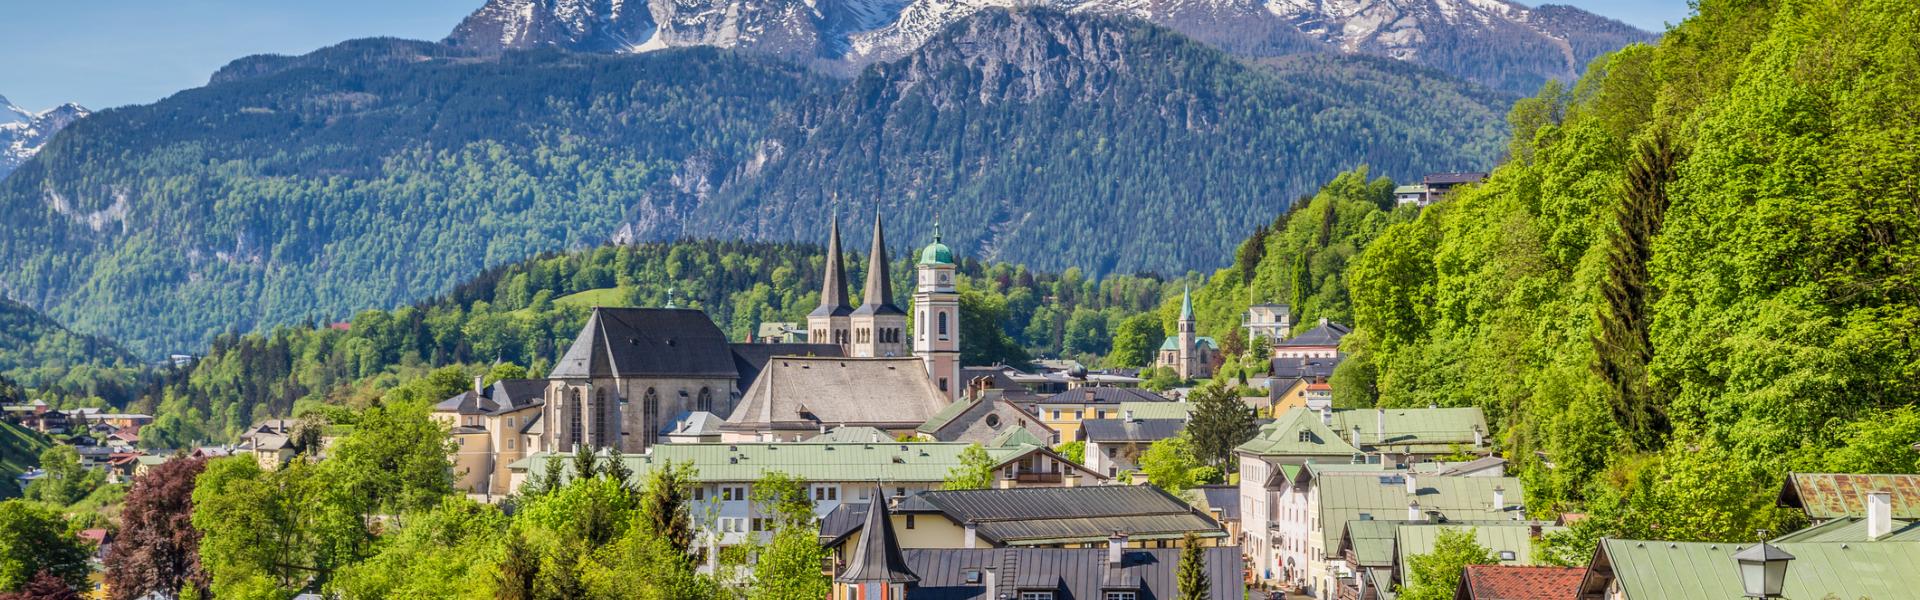 Ferienwohnungen und Ferienhäuser in Berchtesgaden - HomeToGo